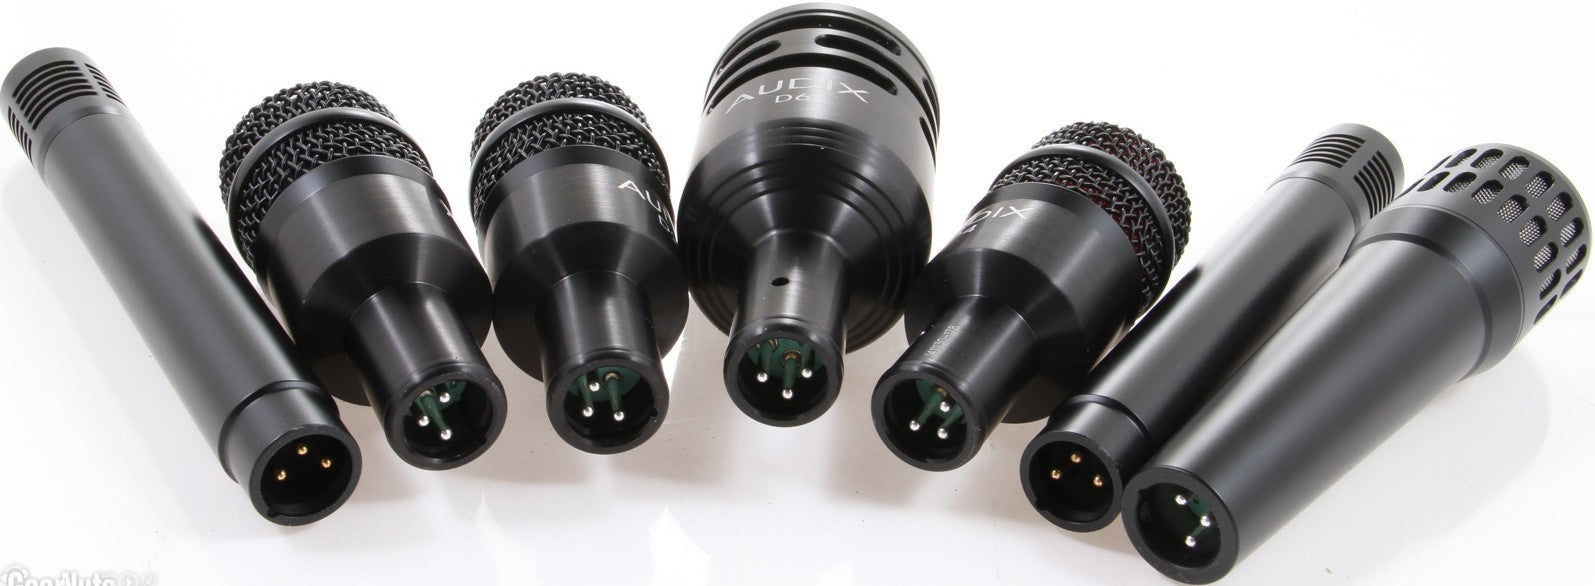 Recording Equipment,Accessories - Audix - Audix DP7 Drum Mic Kit - Professional Audio Design, Inc